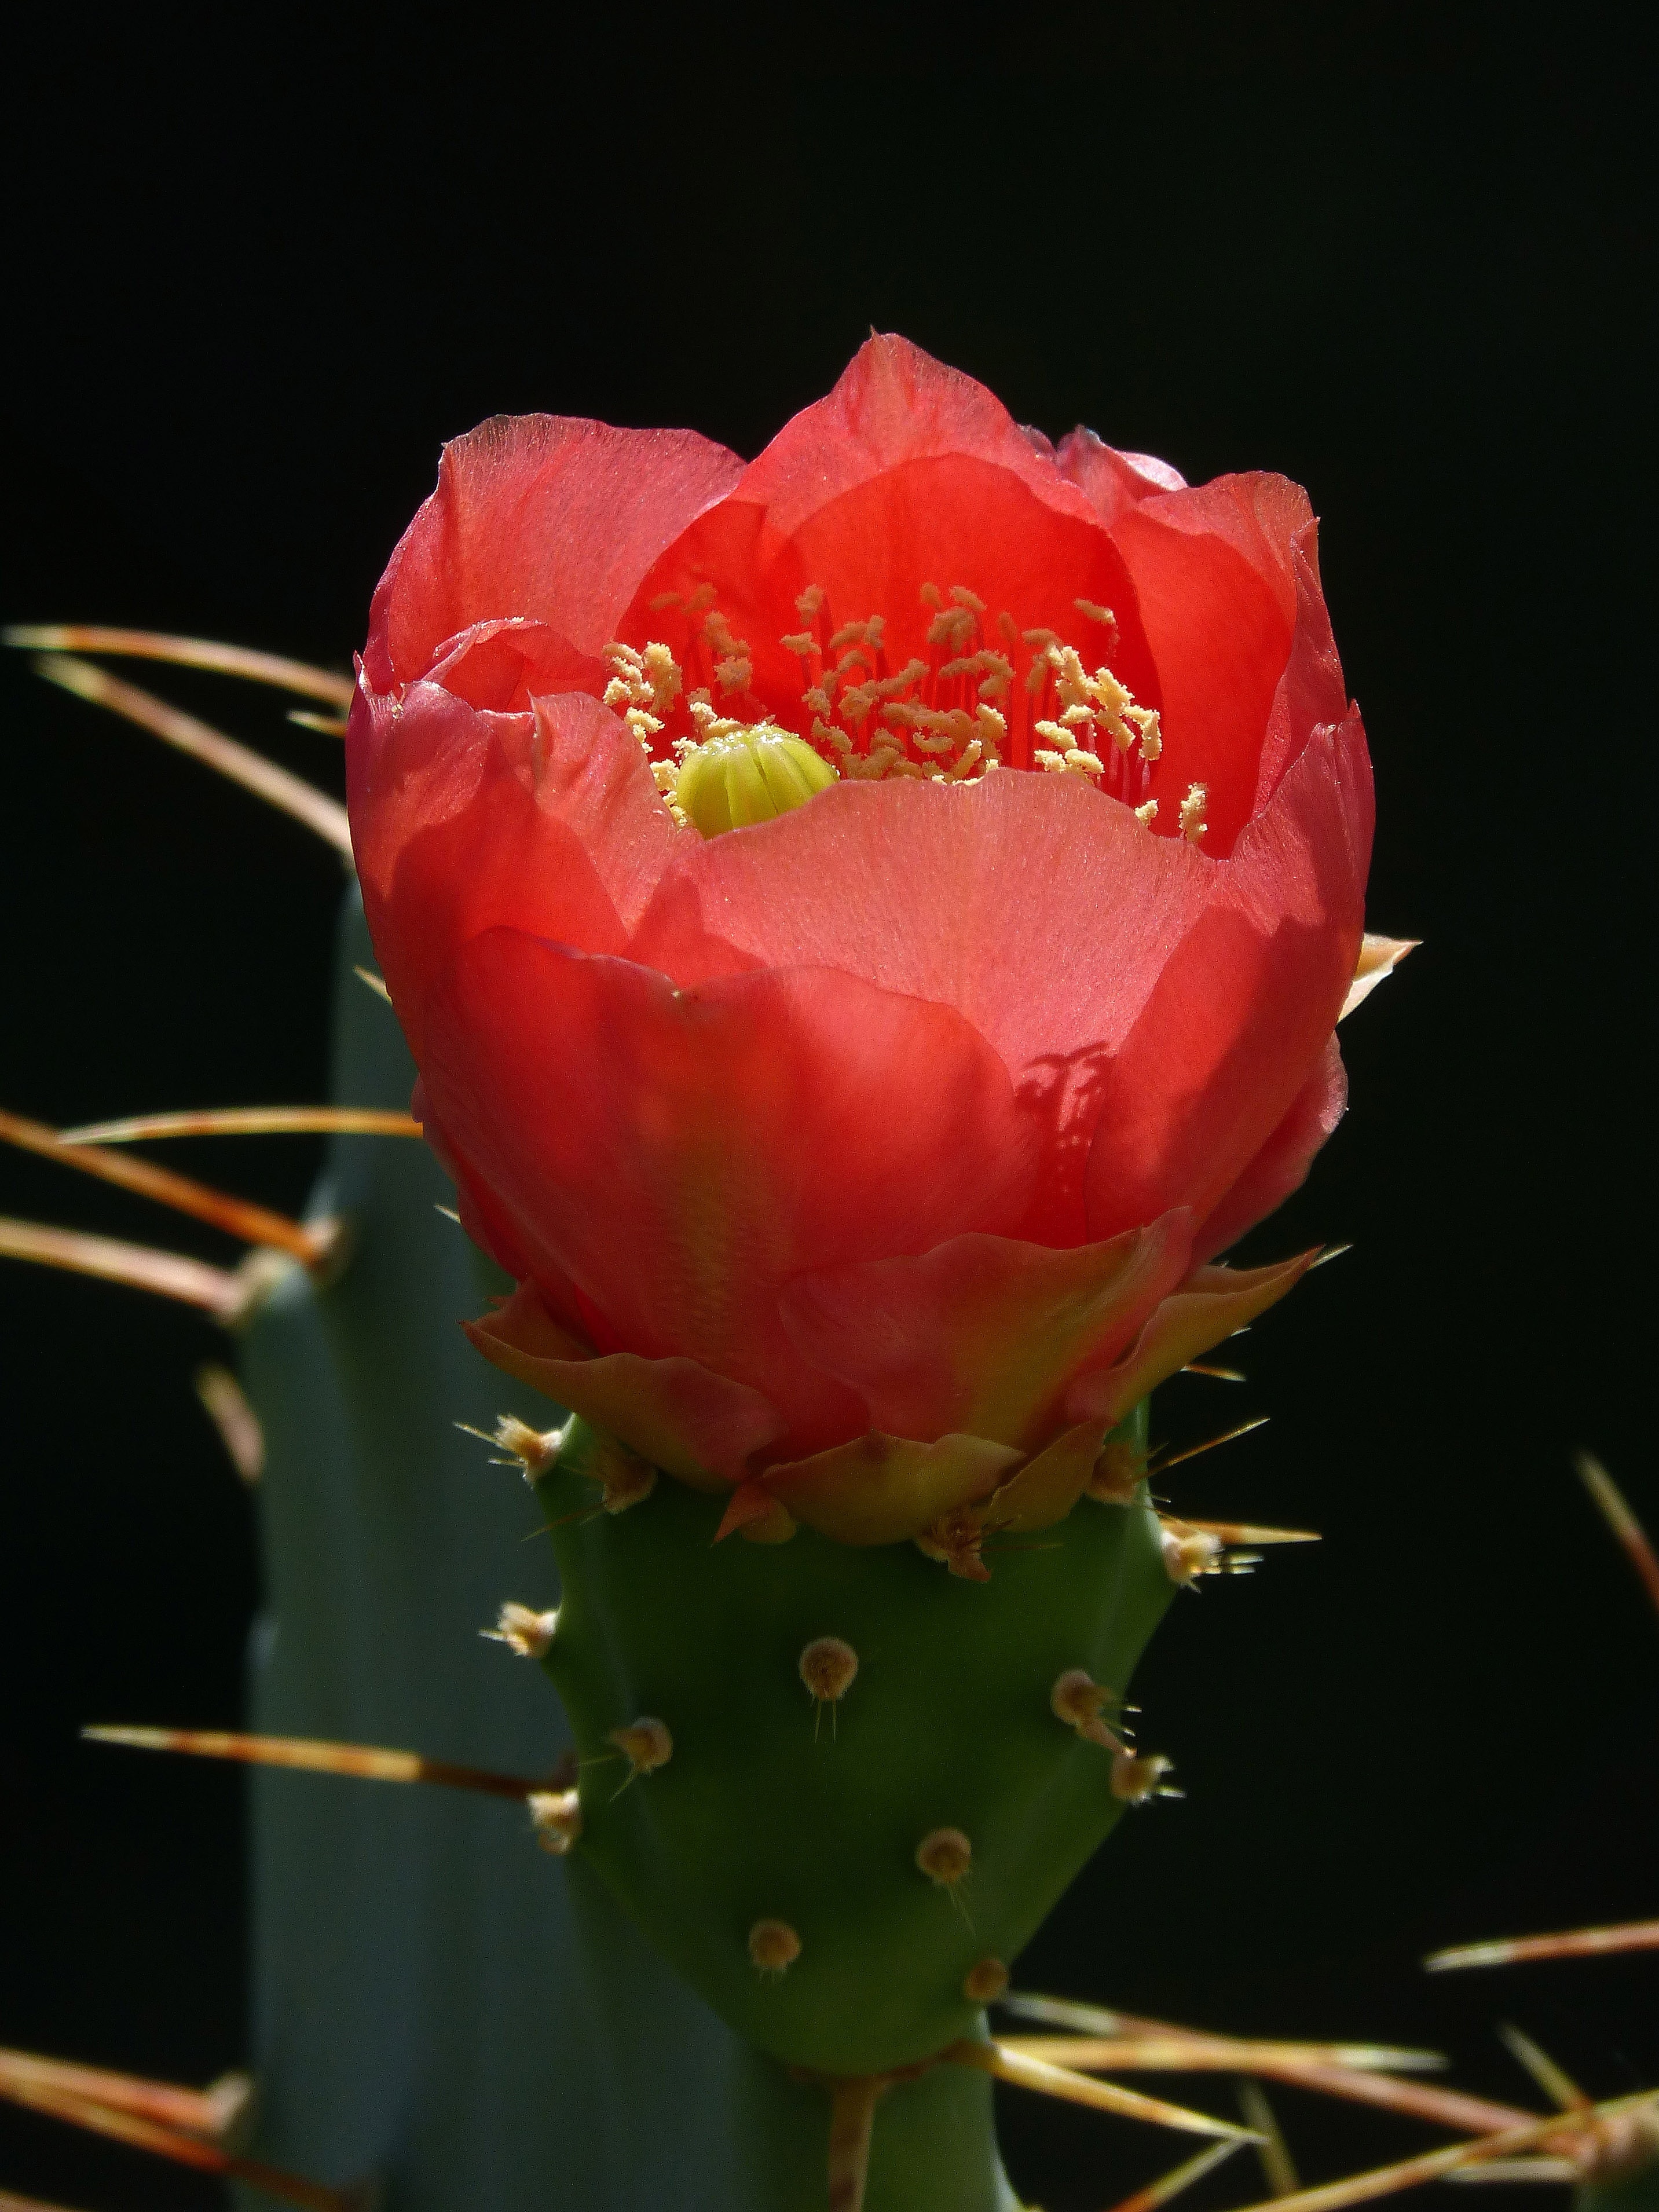 red saguaro cactus flower